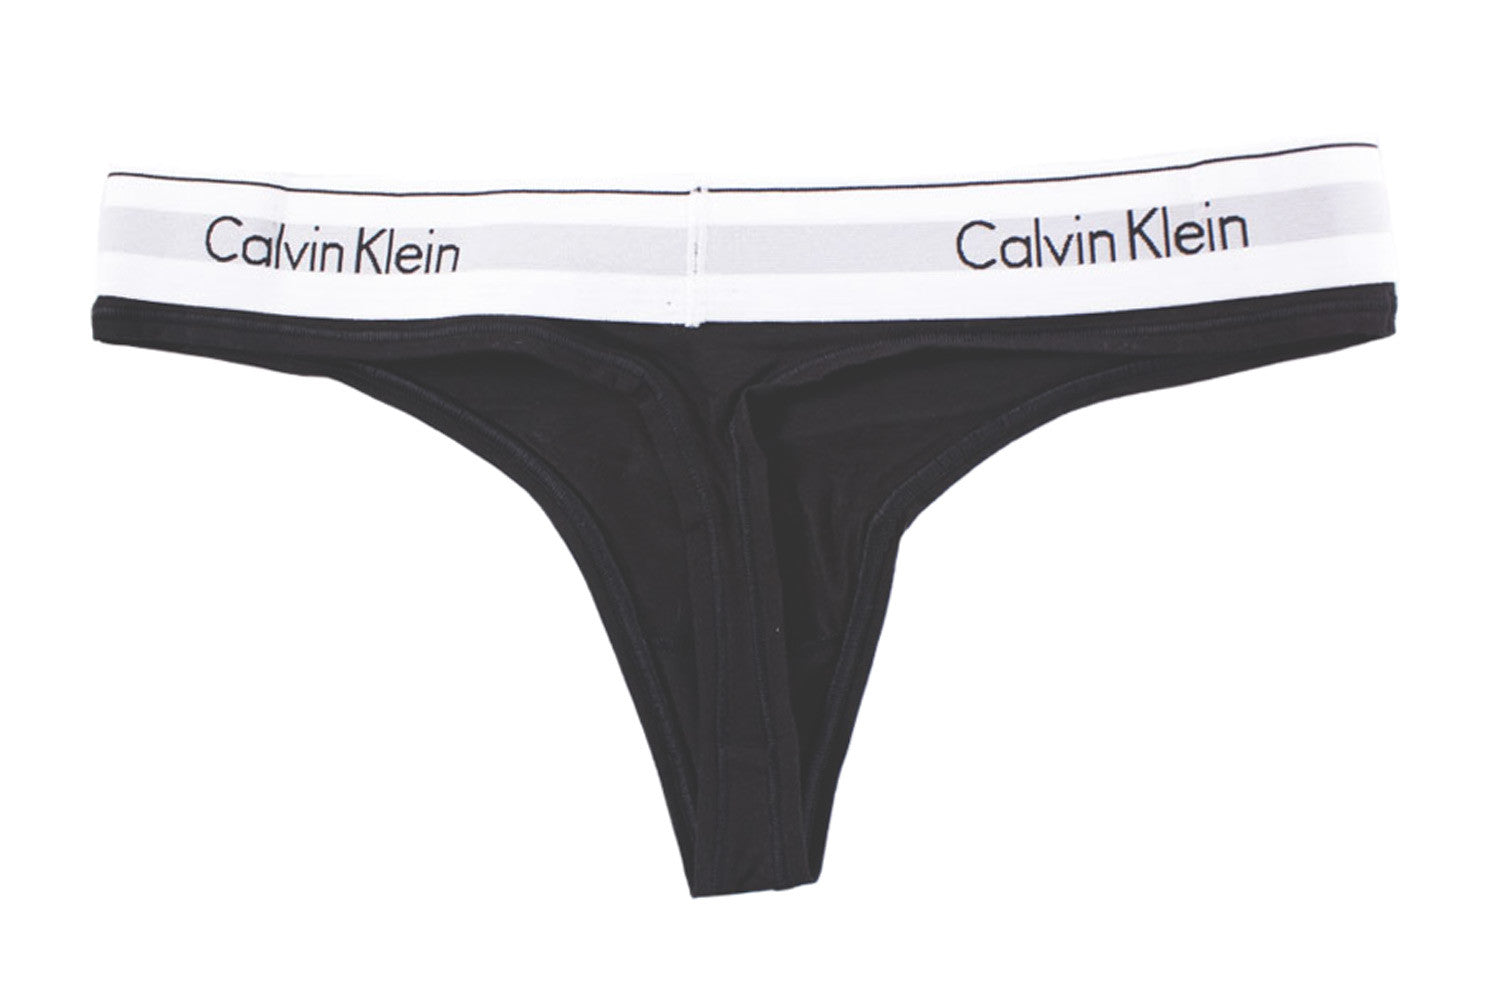 Calvin Klein Underwear Intimo Donna